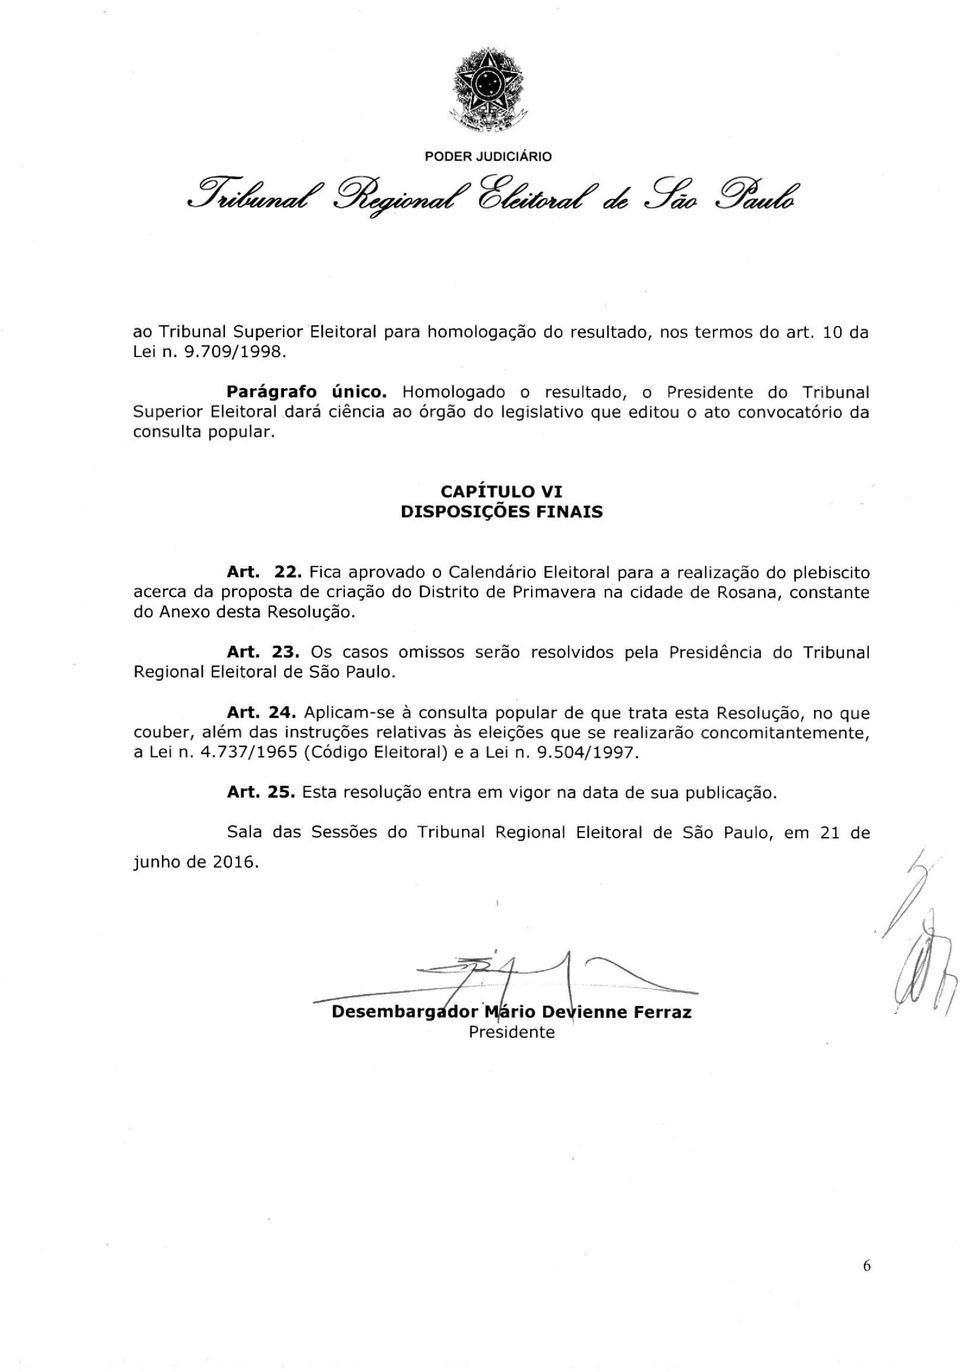 Fica aprovado o Calendário Eleitoral para a realização do plebiscito acerca da proposta de criação do Distrito de Primavera na cidade de Rosana, constante do Anexo desta Resolução. Art. 23.